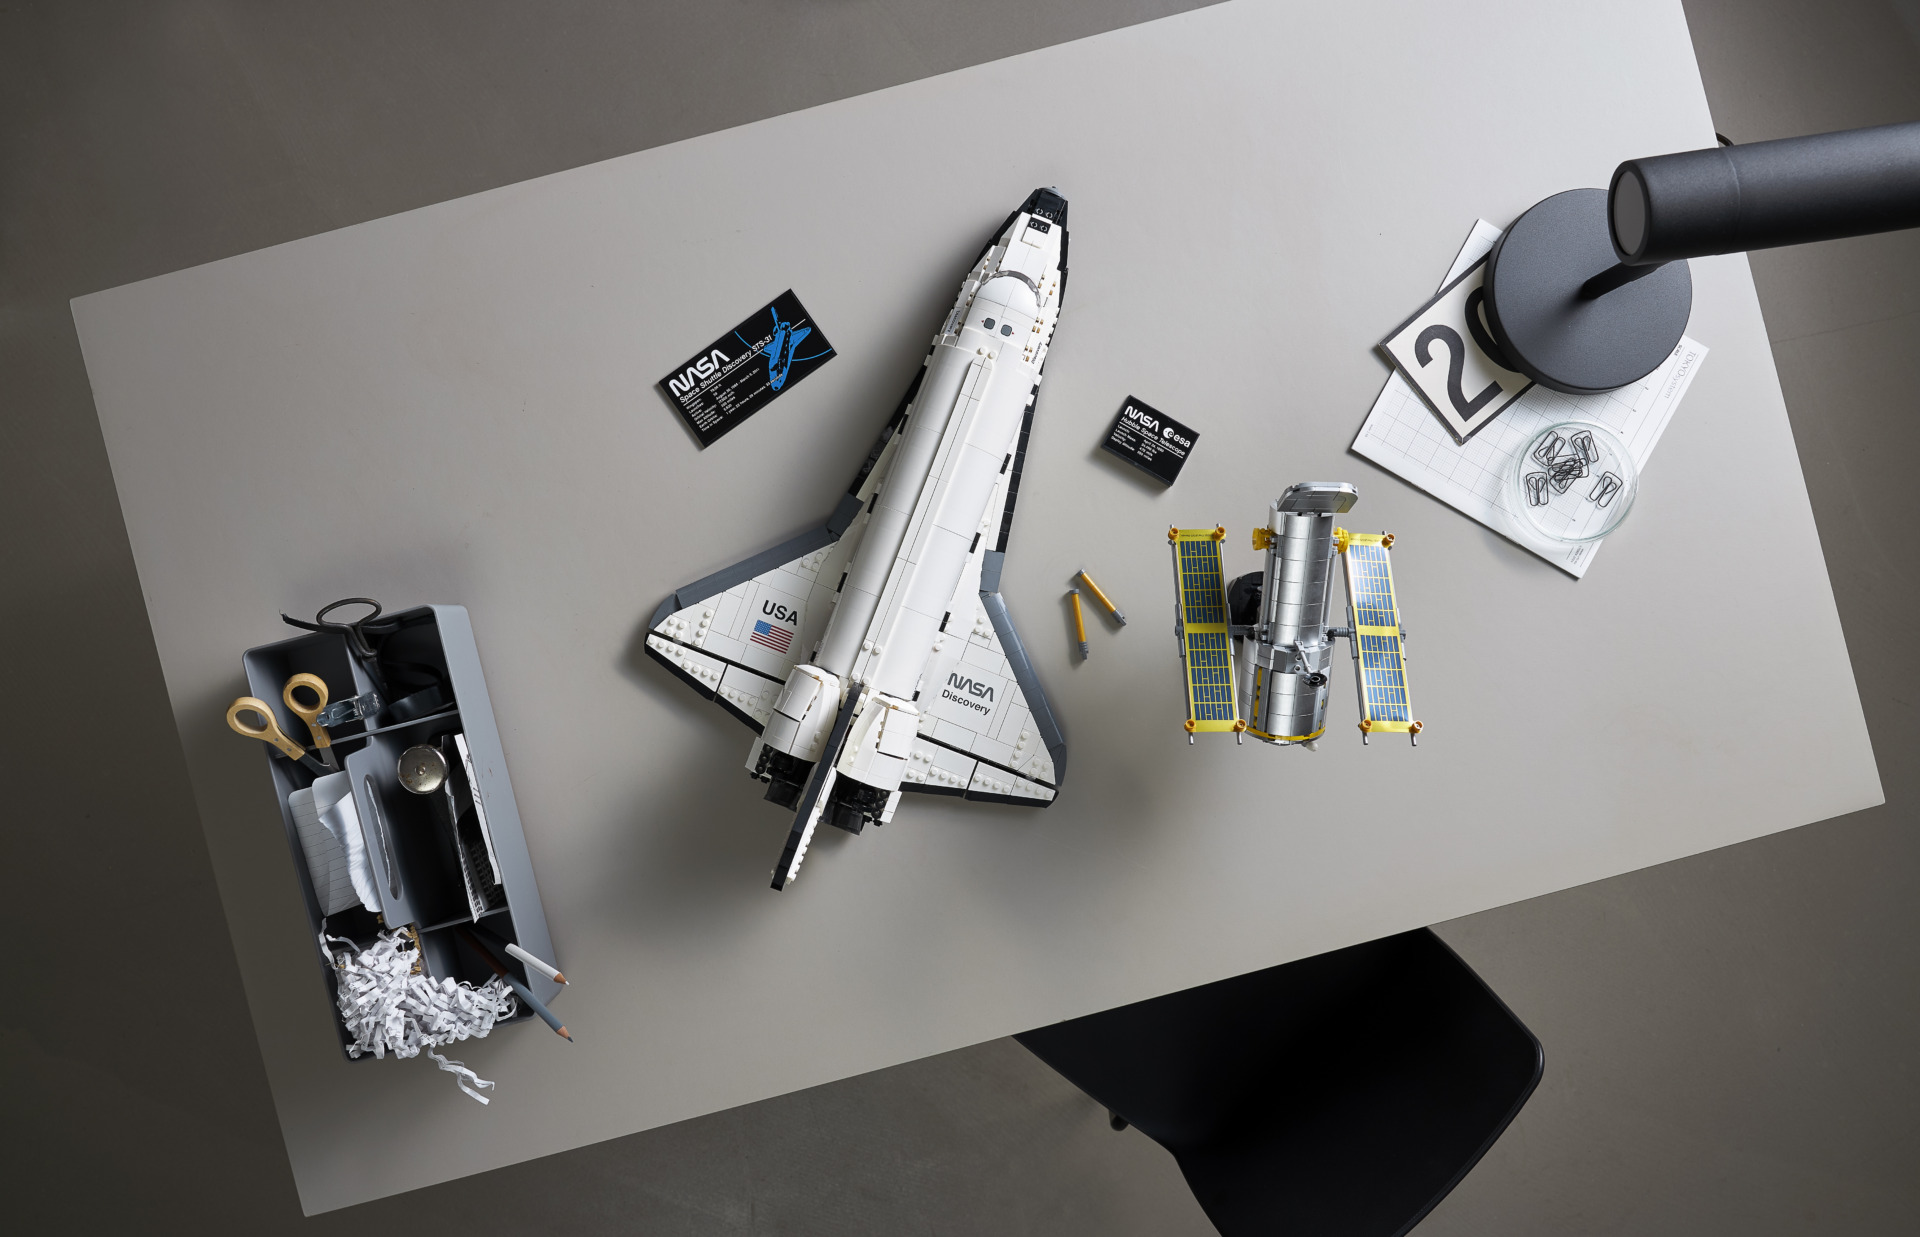 ディスカバリー号で宇宙探査を追体験、「レゴ NASA スペースシャトル ディスカバリー号 10283」登場 2021年4月1日発売【更新